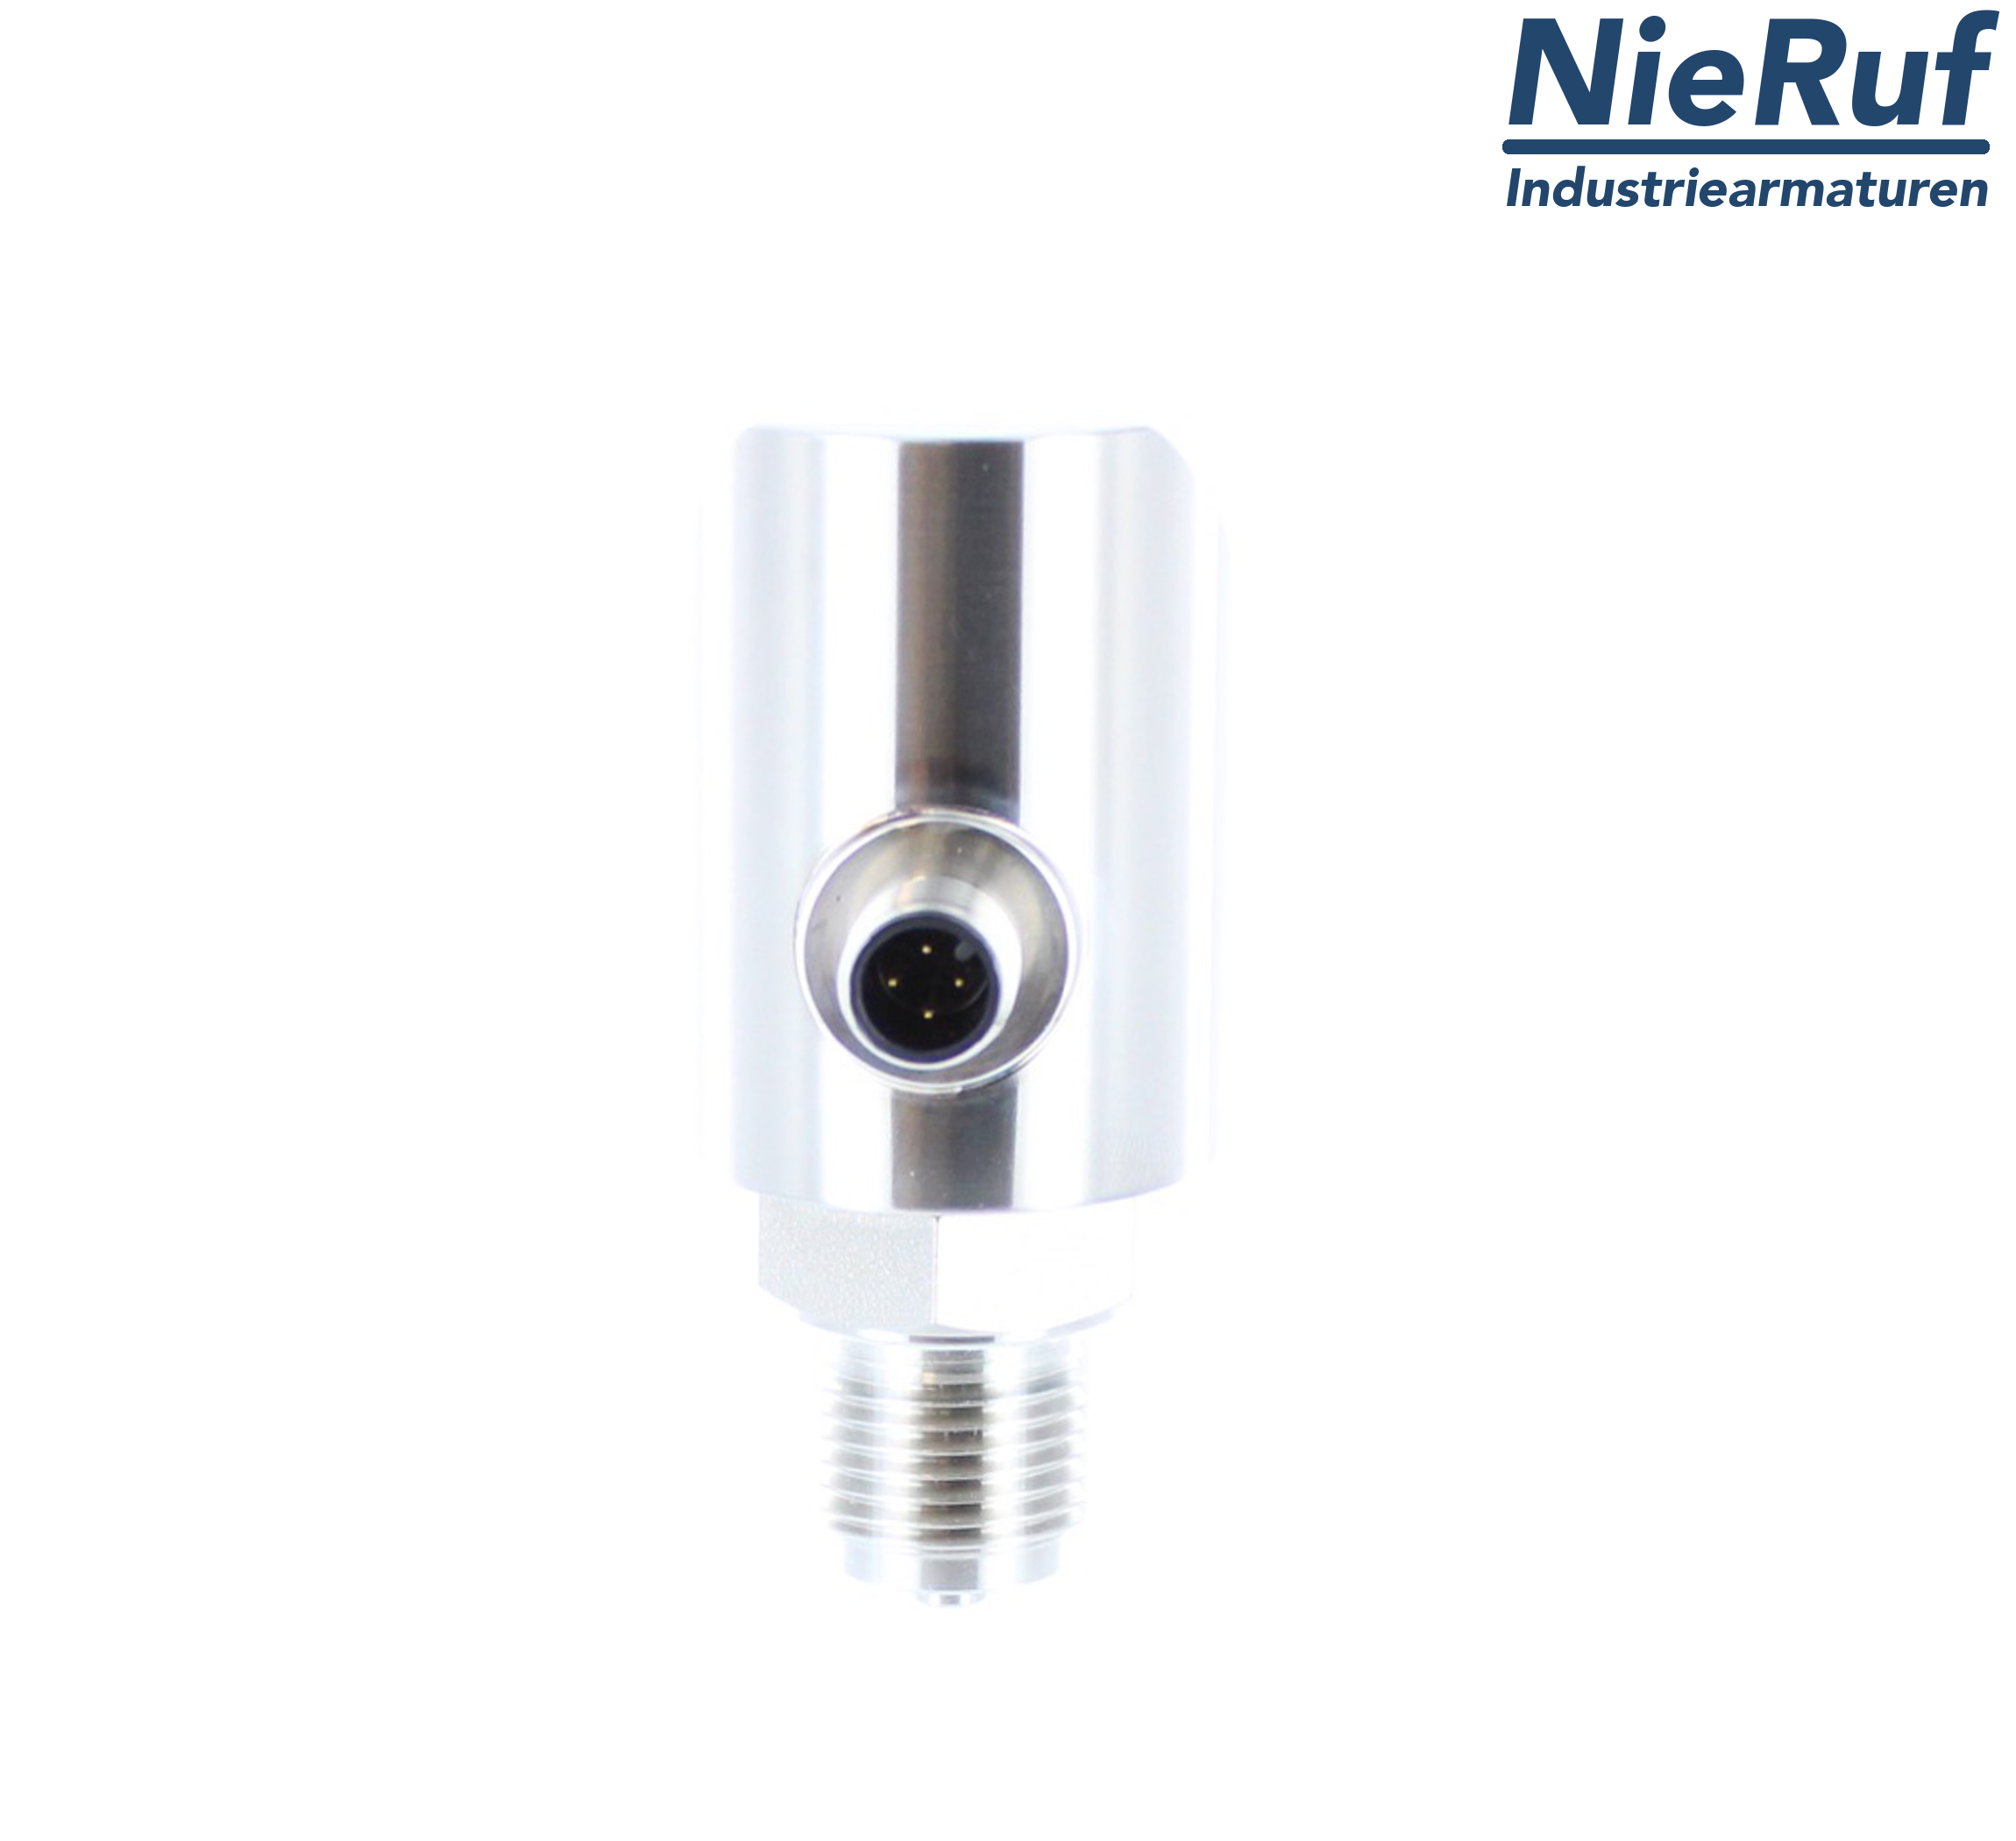 digital pressure sensor G 1/2" B 4-wire: 1xPNP, 1x4 - 20mA, Desina FPM 0,0 - 250,0 bar